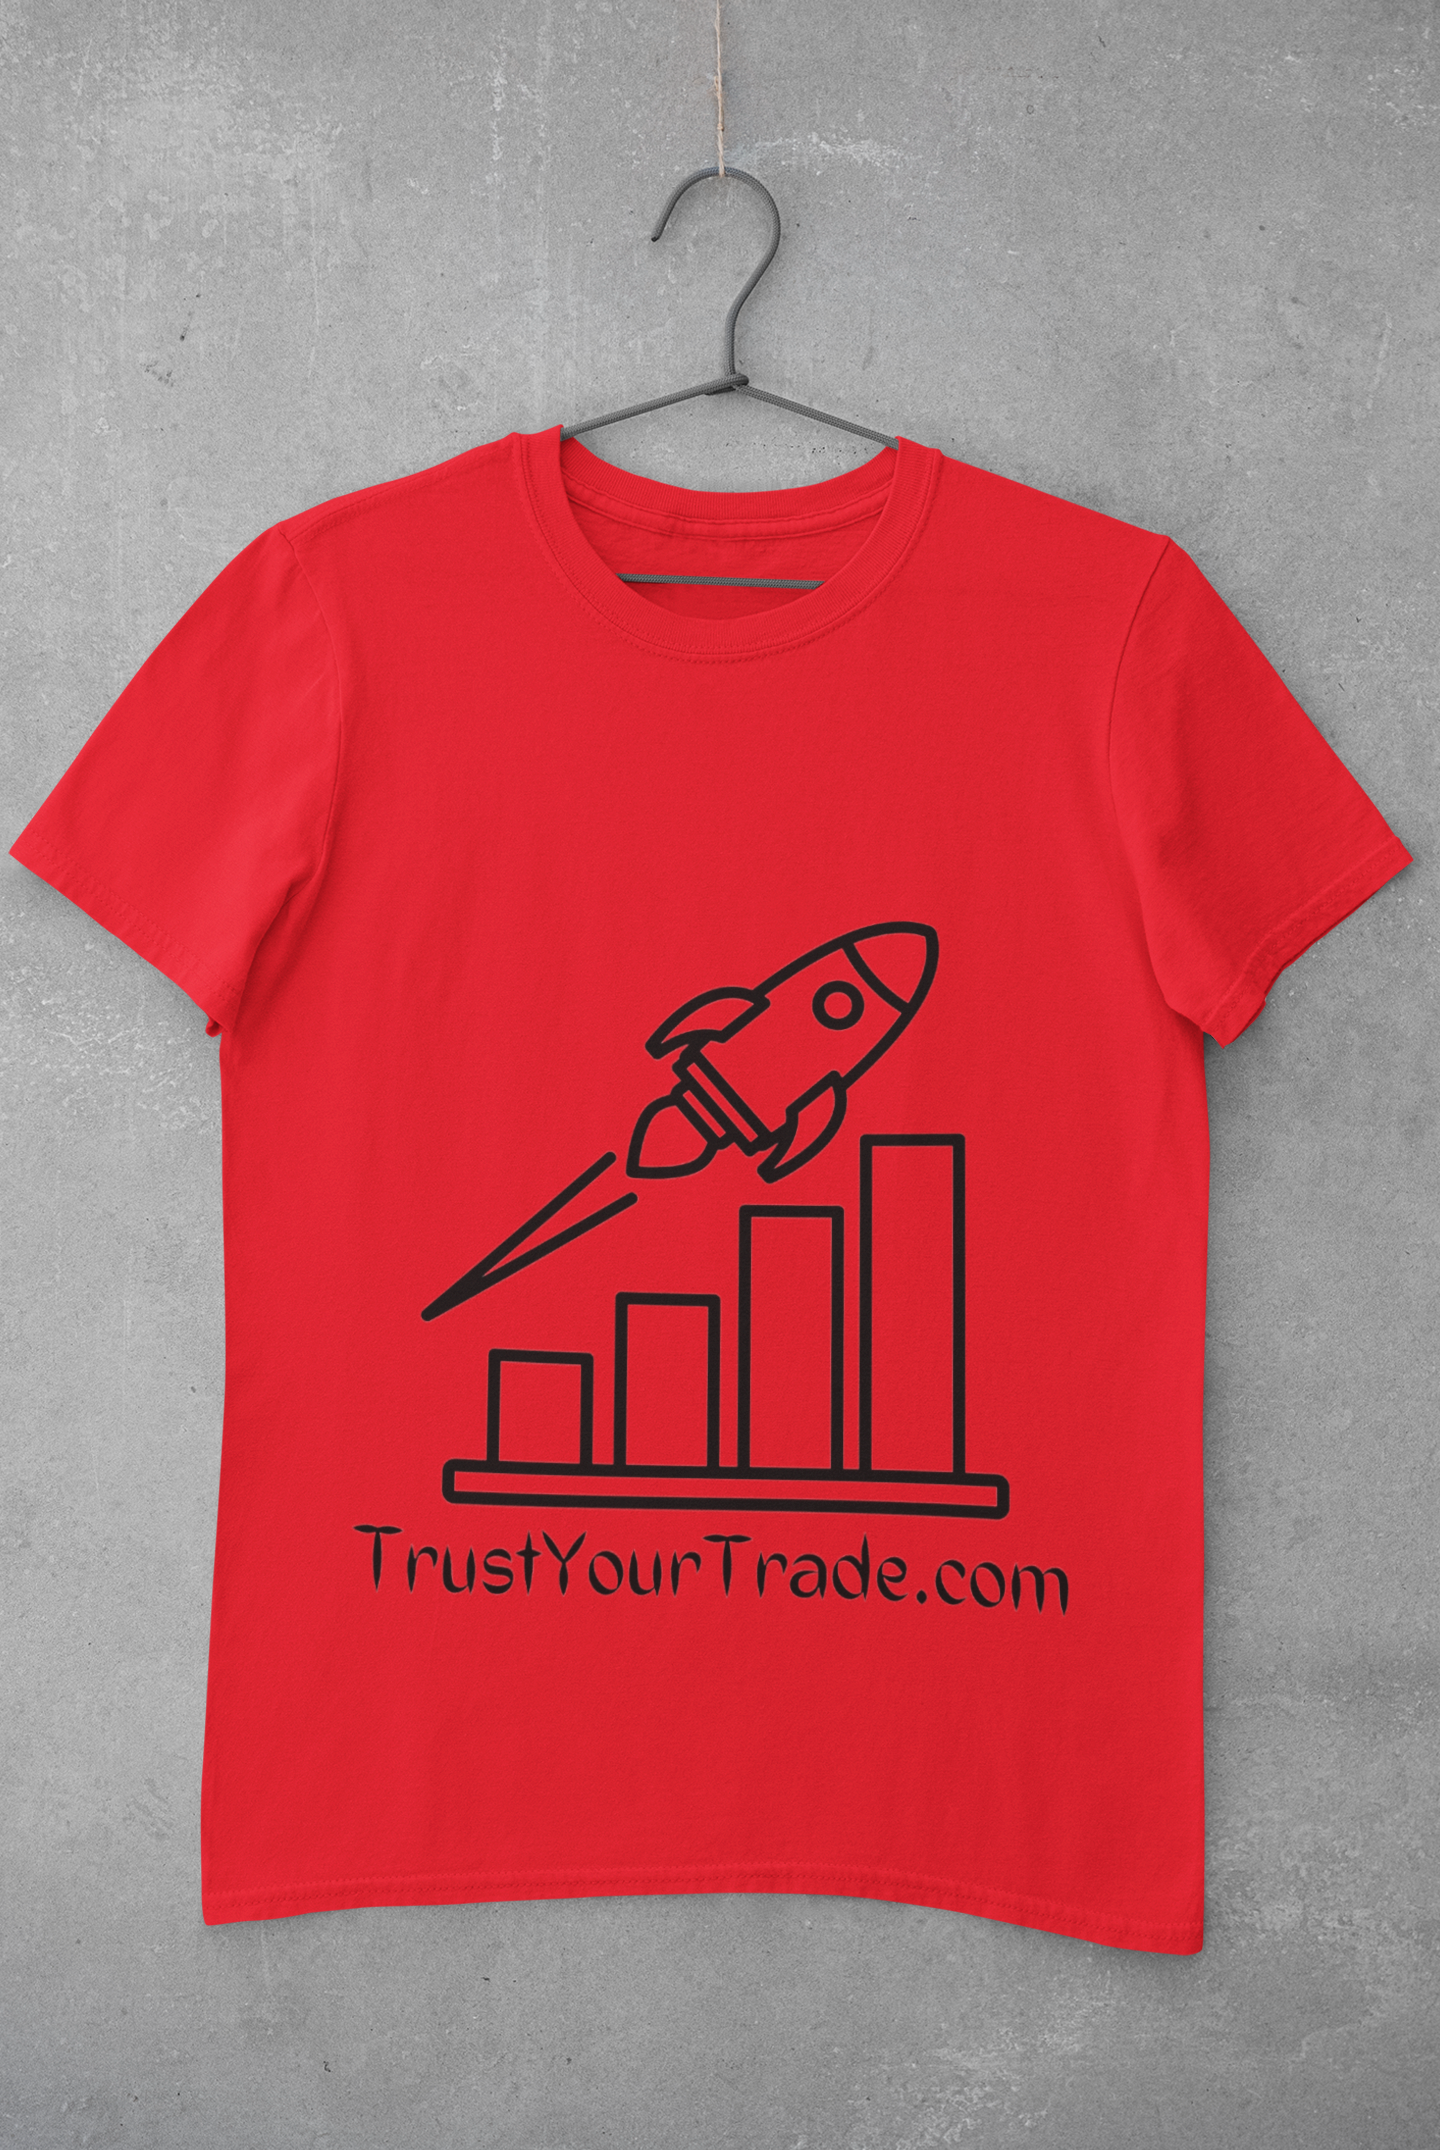 Trading & Crypto T Shirts